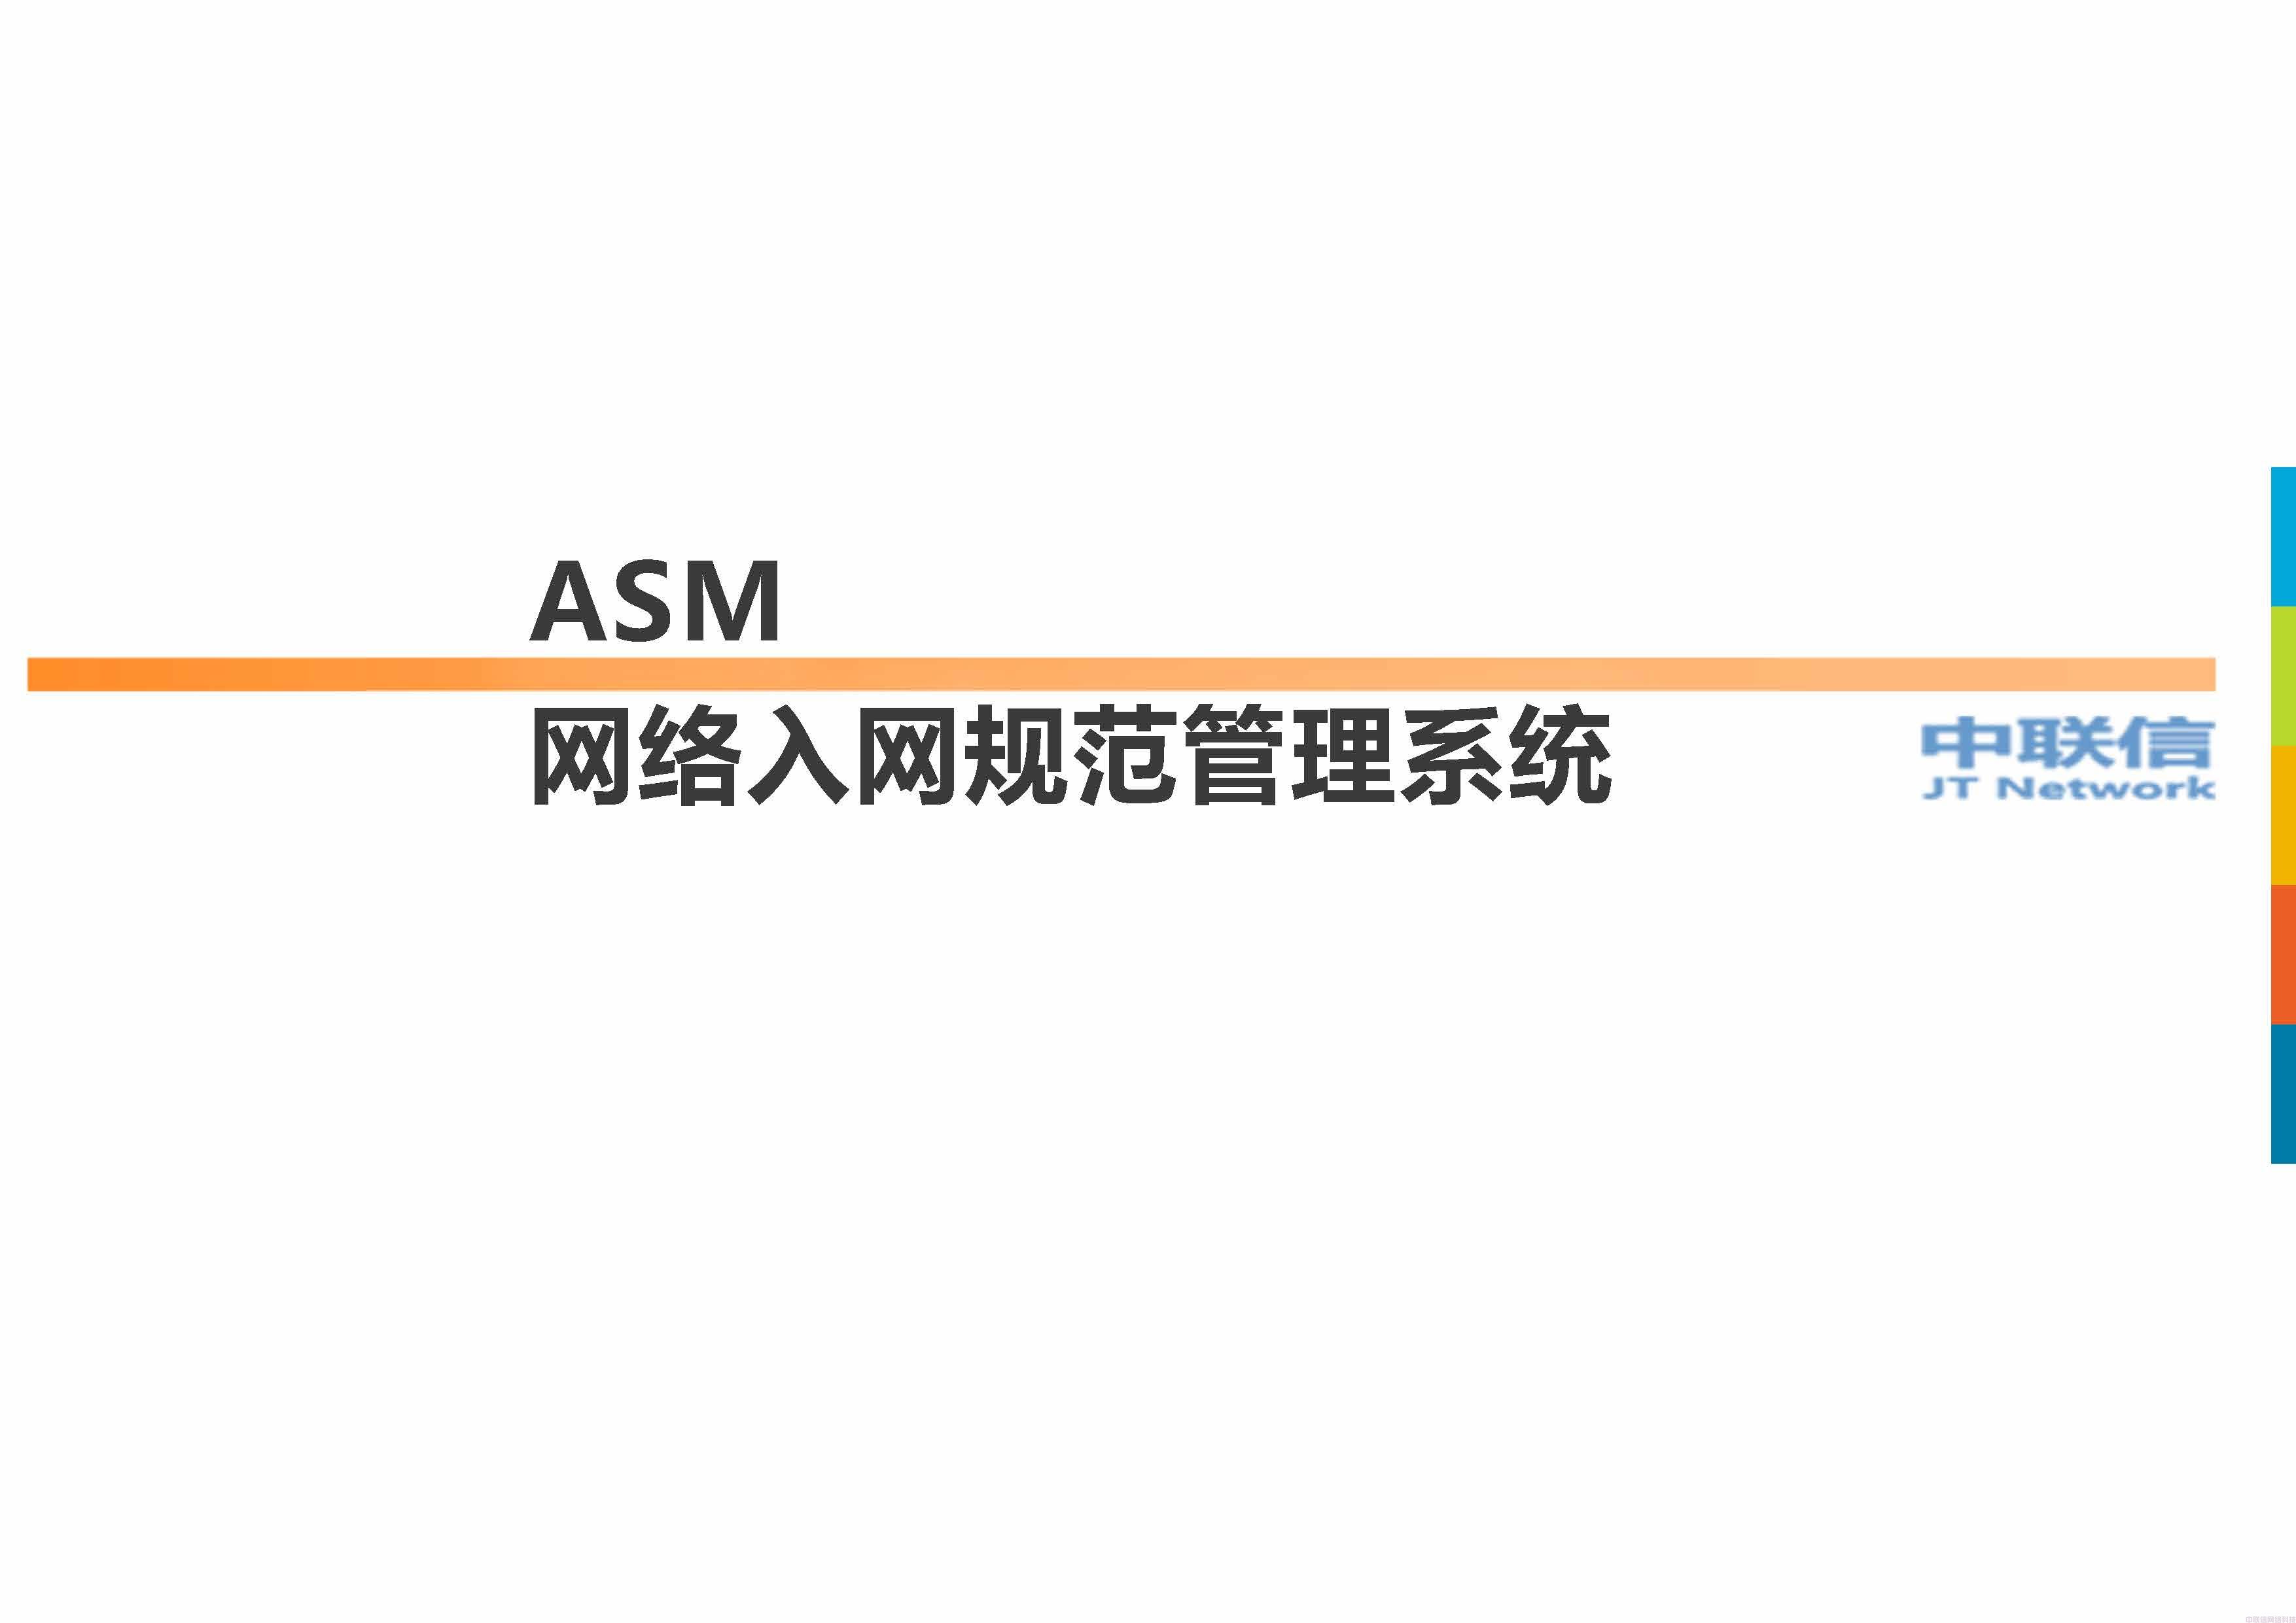 网络准入ASM入网规范管理系统方案介绍 (图1)